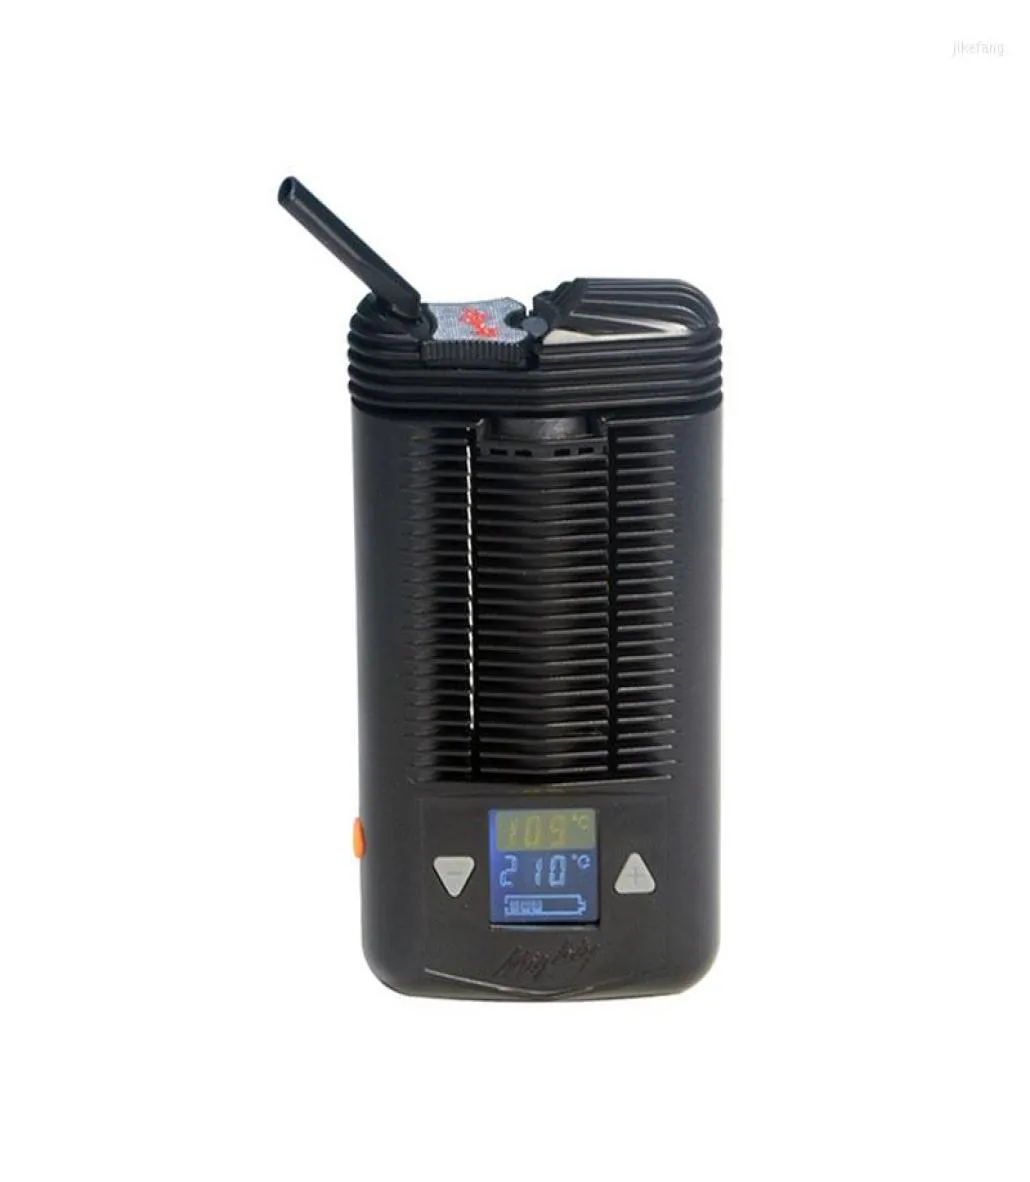 ベイクウェアツール強力な乾燥気化器ポータブルサーモスタット煙喫煙セットビッグファットマン9273600